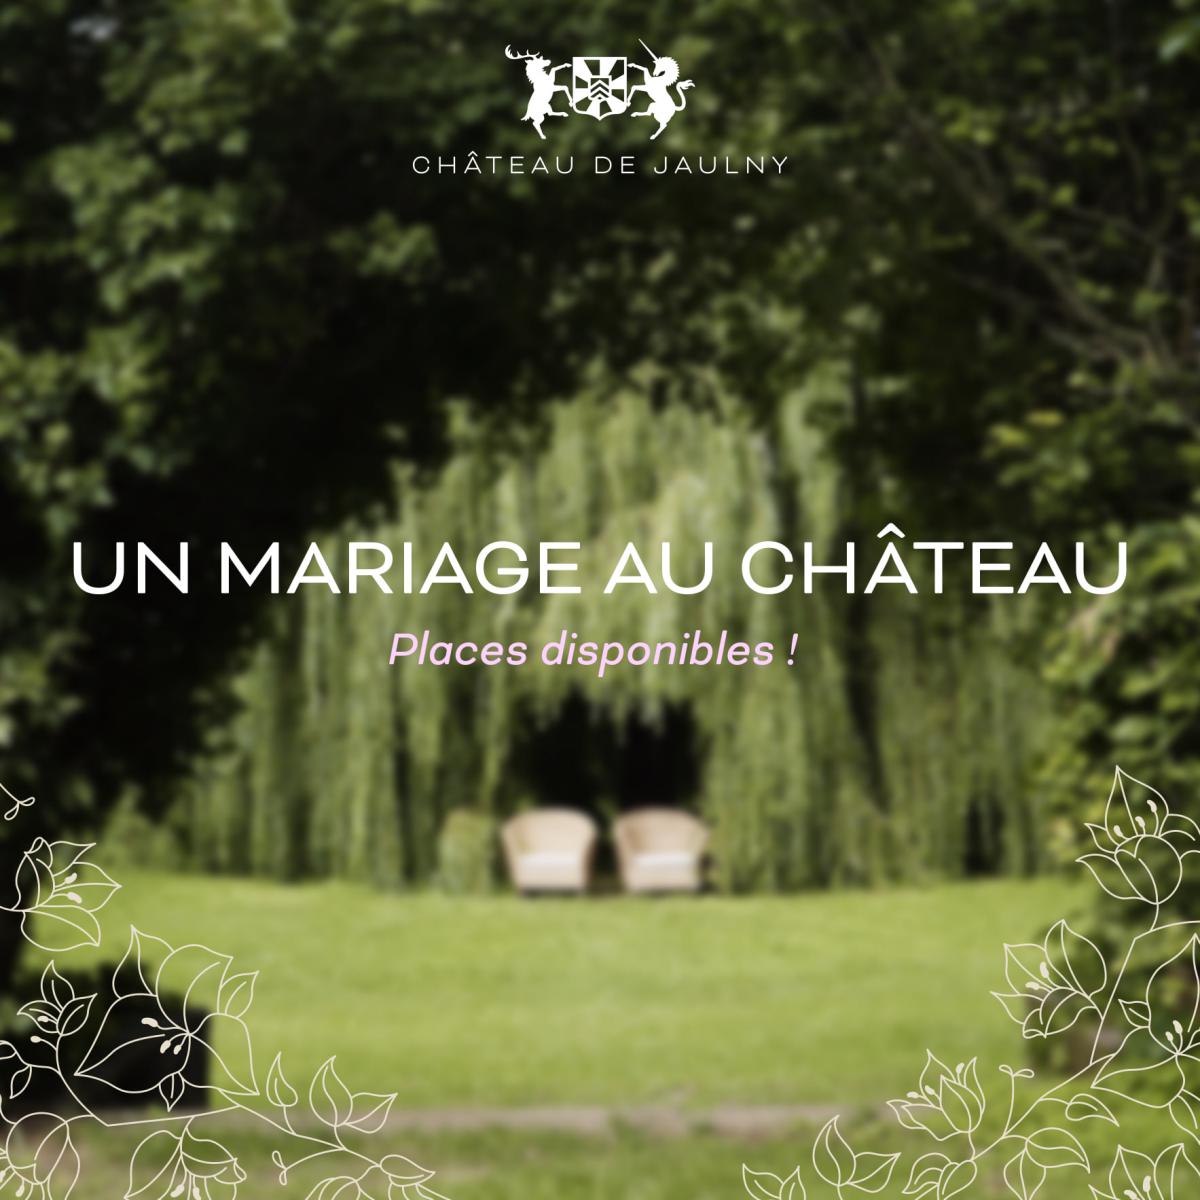 Arche cabinet vert - mariage au chateau de jaulny - Crédit photo : Clément PENETRAT